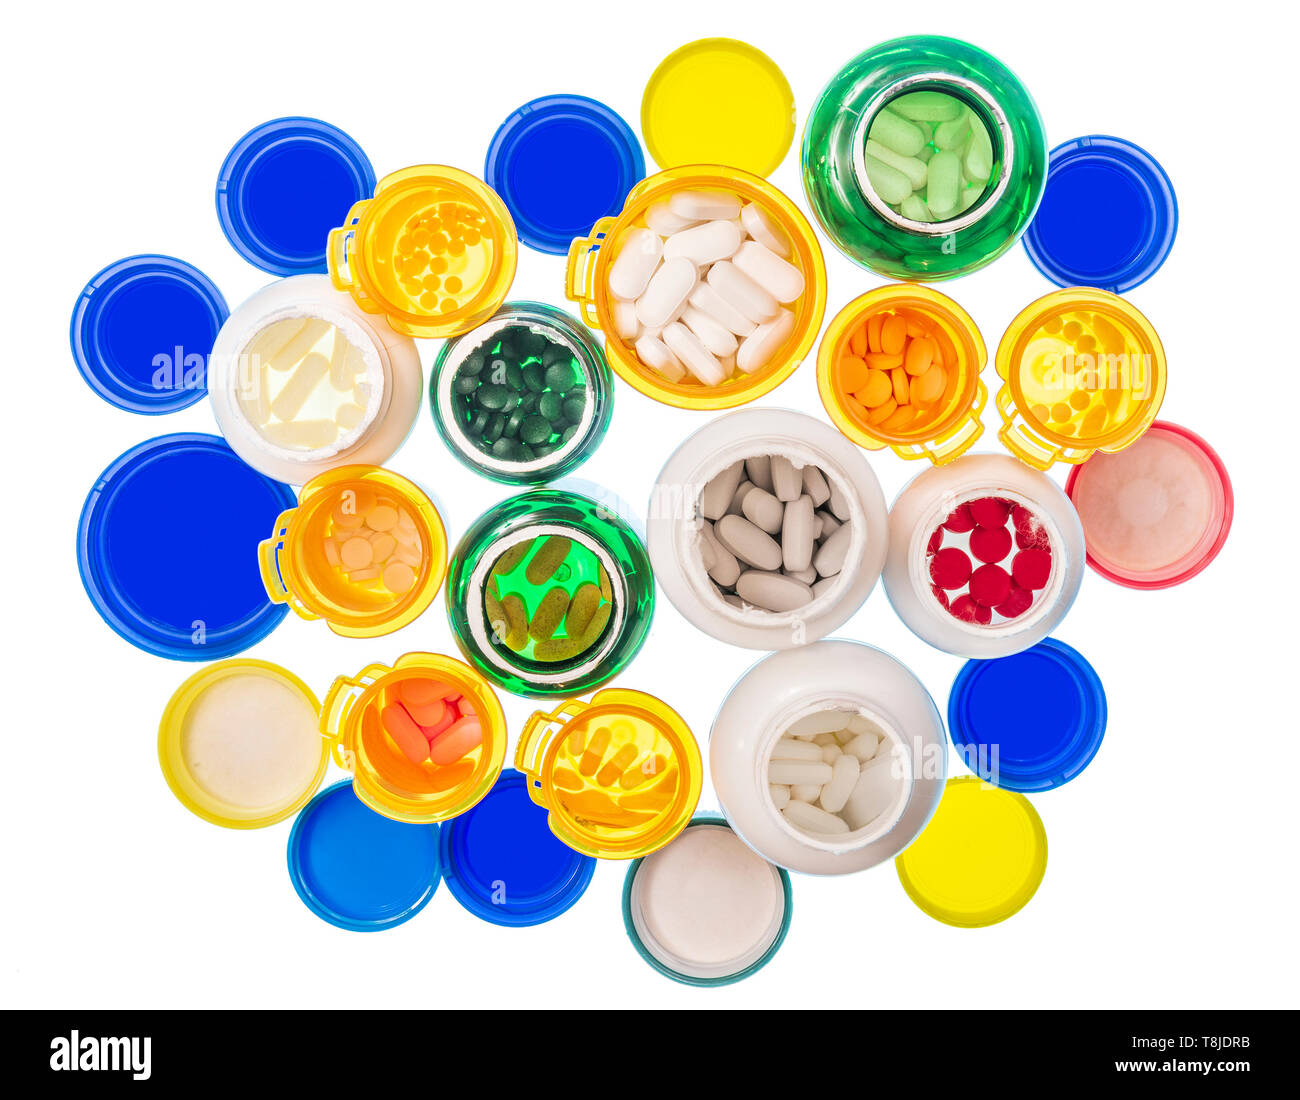 Coup horizontal en regardant un grand groupe de différentes tailles et couleurs de bouteilles de pilules remplie de pilules. Les bouteilles et les couvercles sont sur une table lumineuse. W Banque D'Images